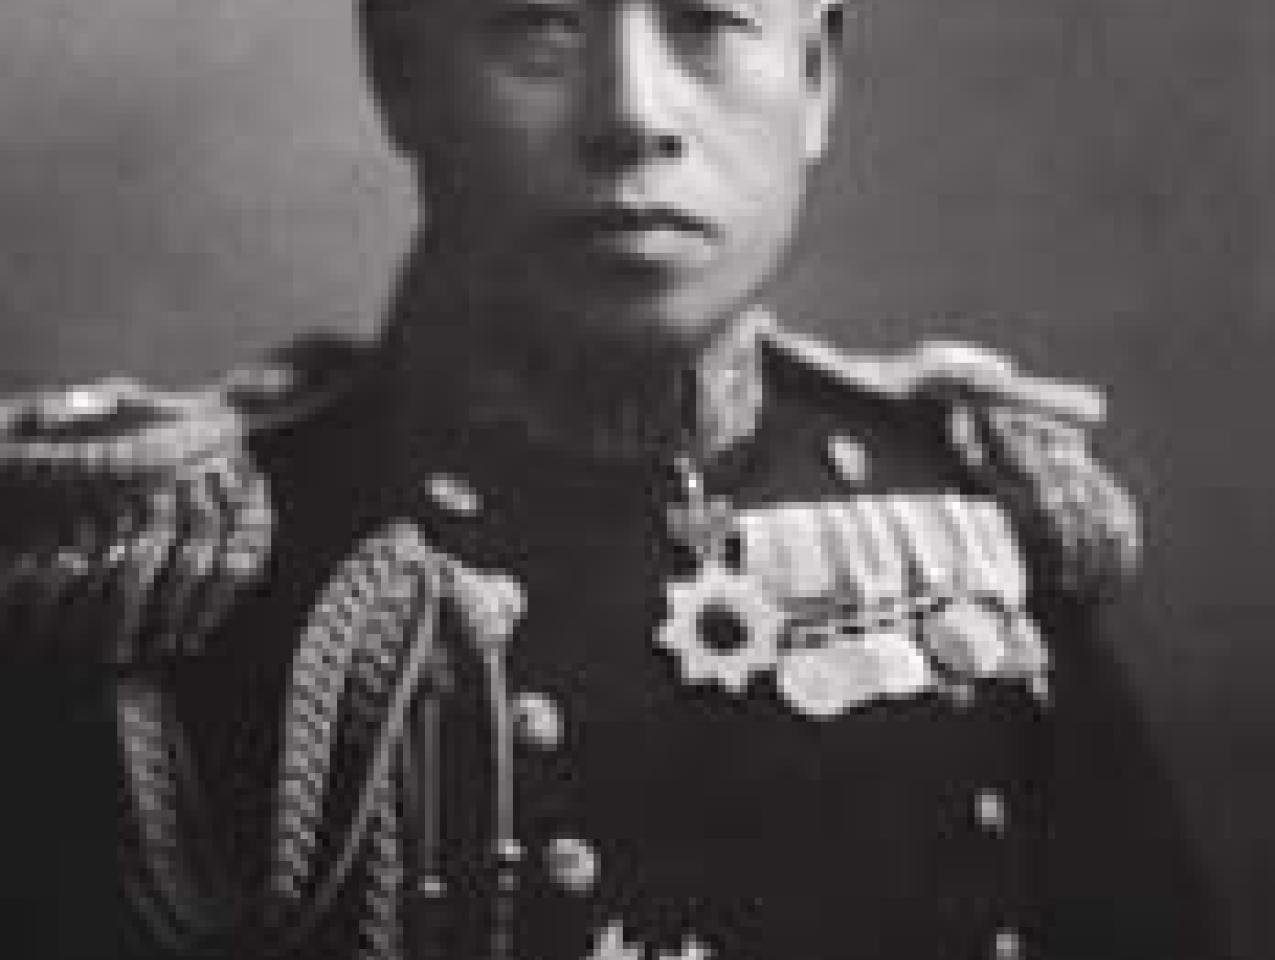 Admiral Yamamoto Isoroku